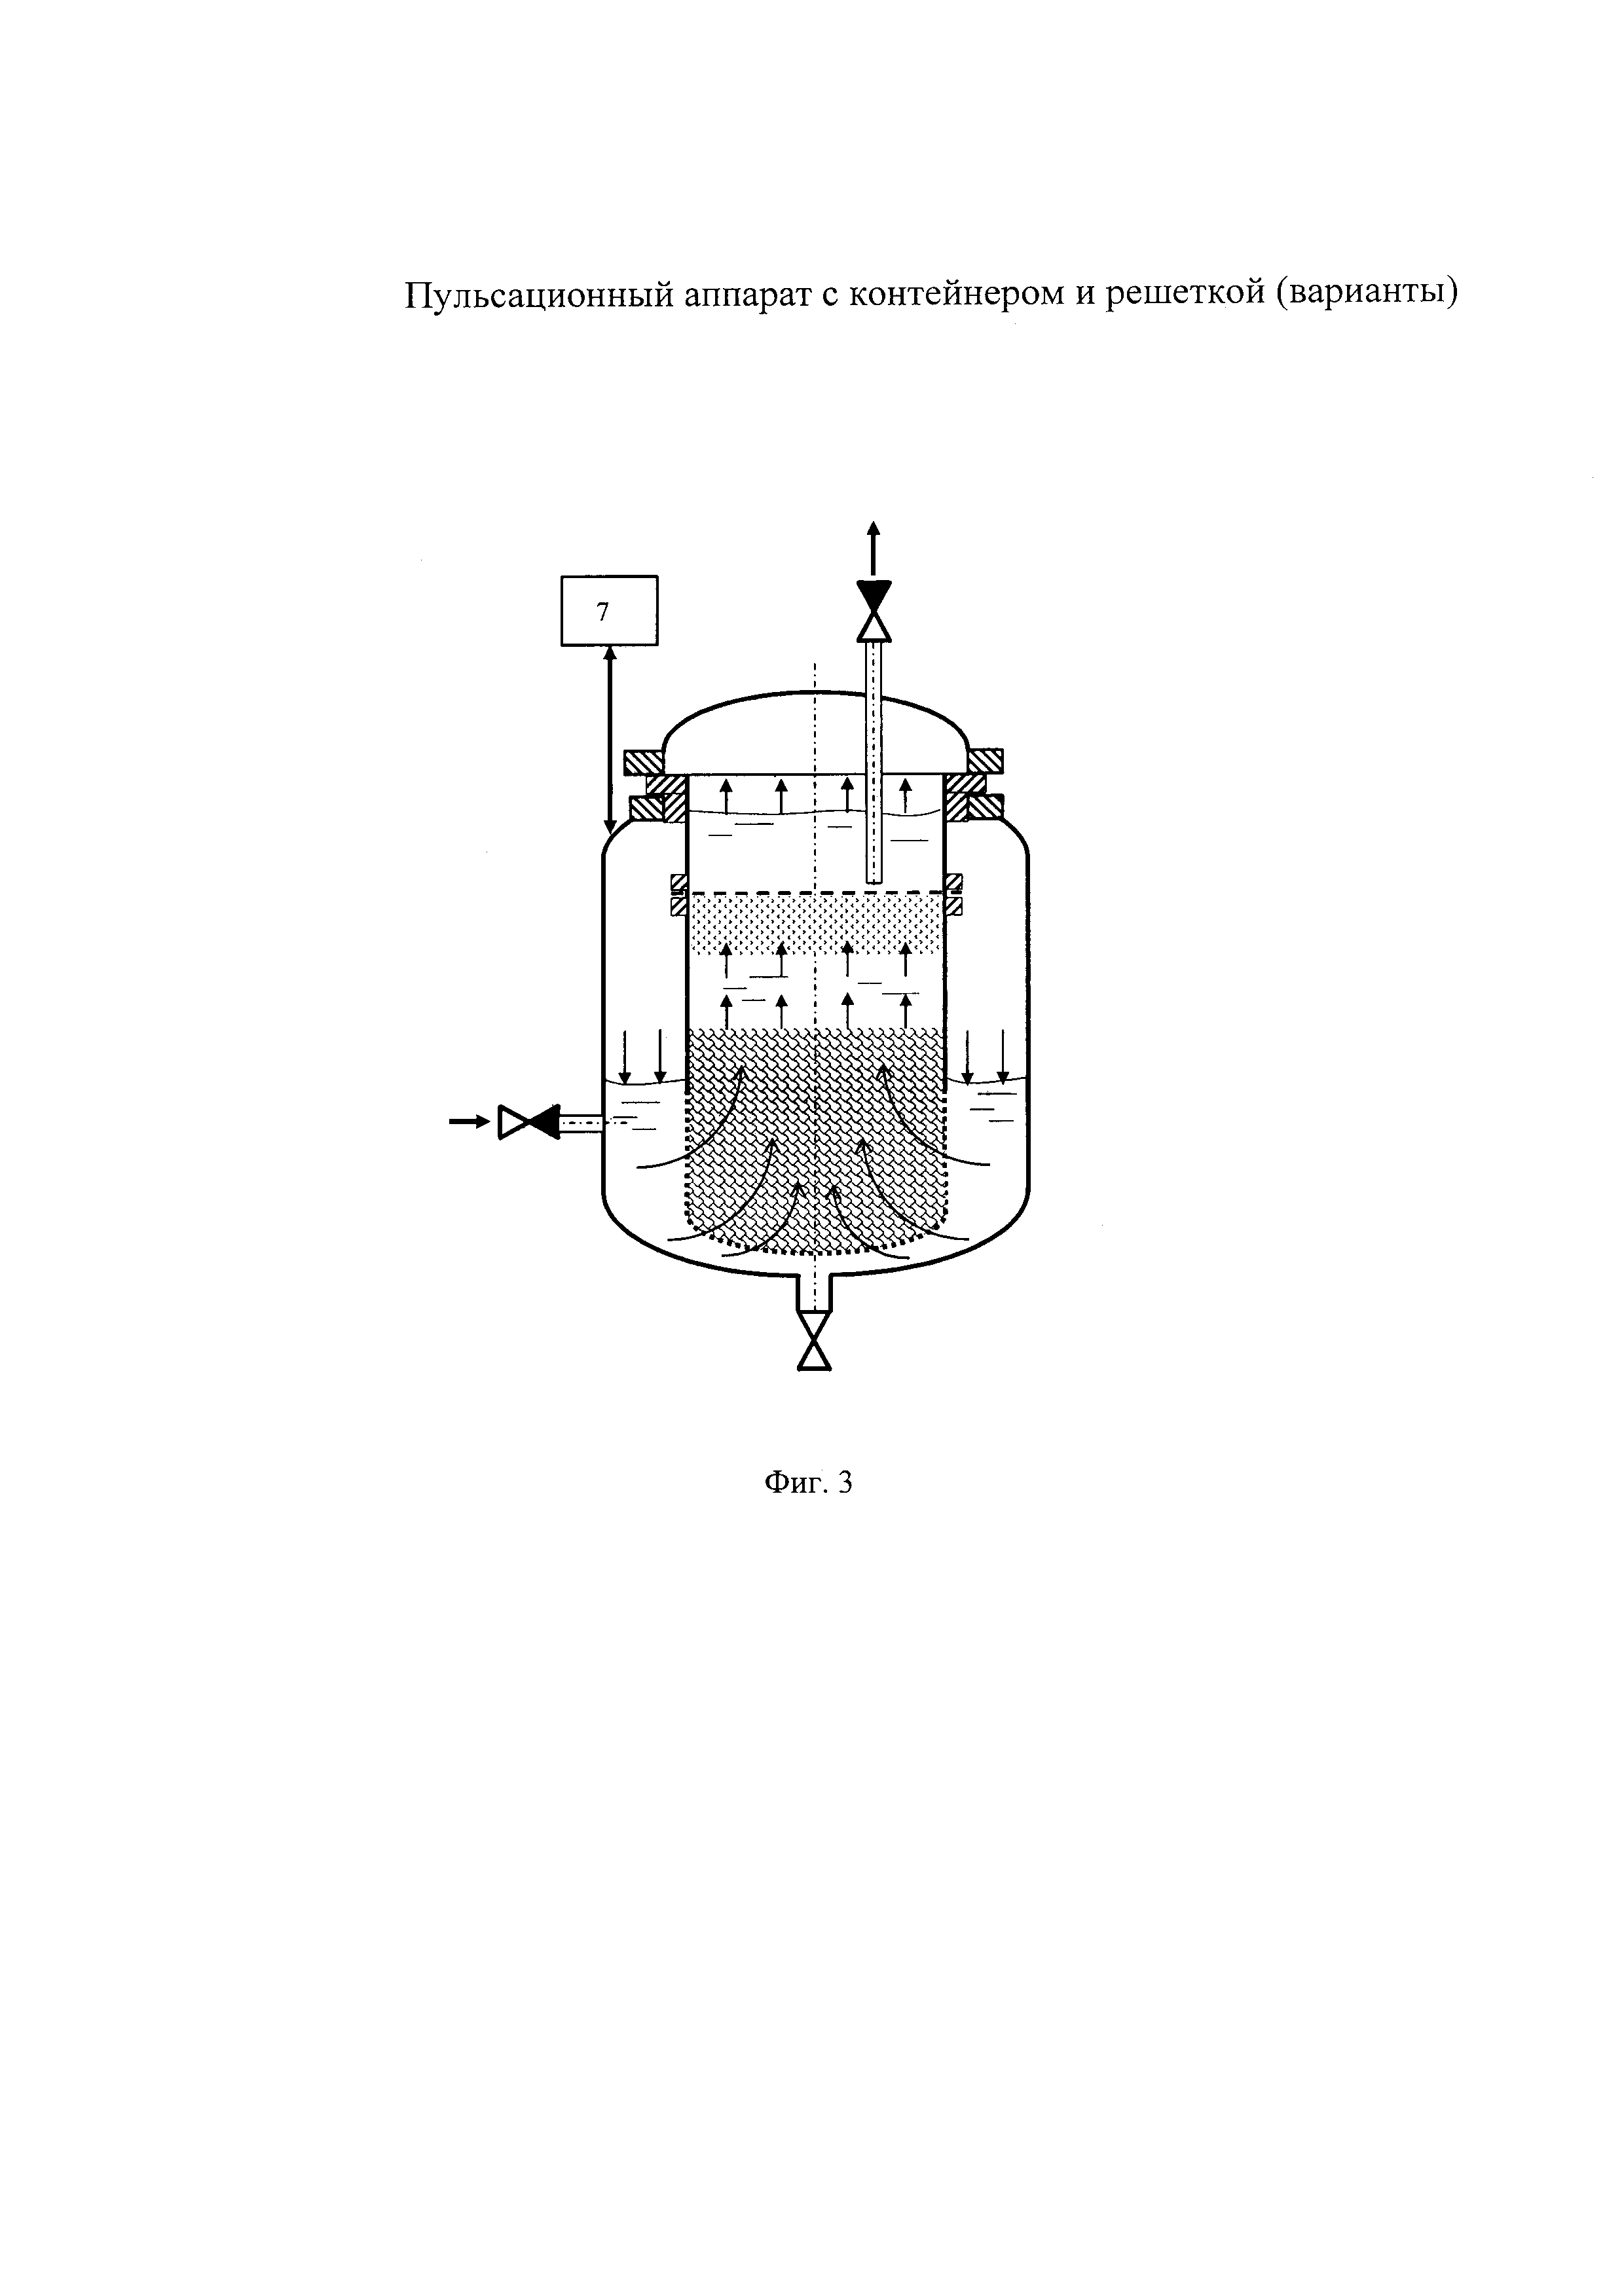 Пульсационный аппарат с контейнером и решеткой (варианты)